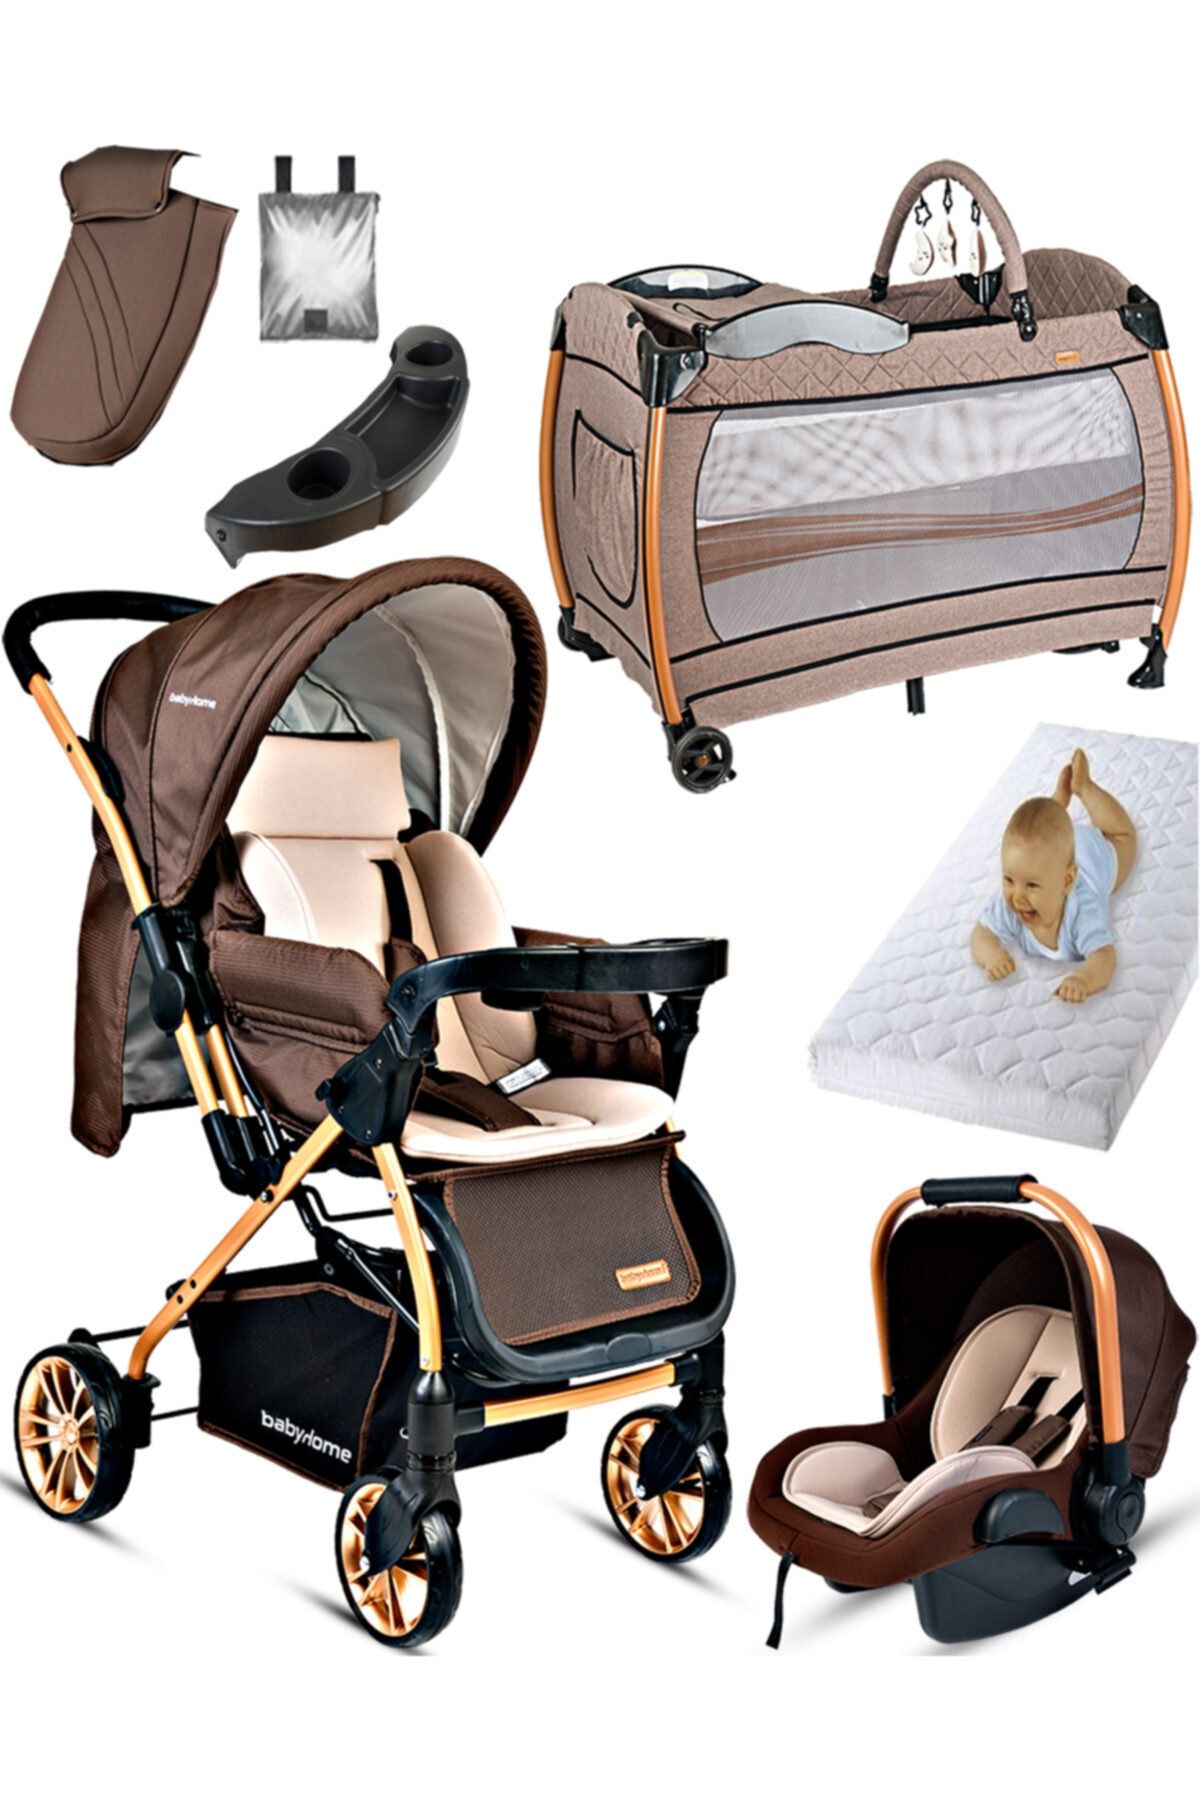 Baby Home 790 Urbo Sistem Bebek Arabası 600 Oyun Parkı Yatak Beşik